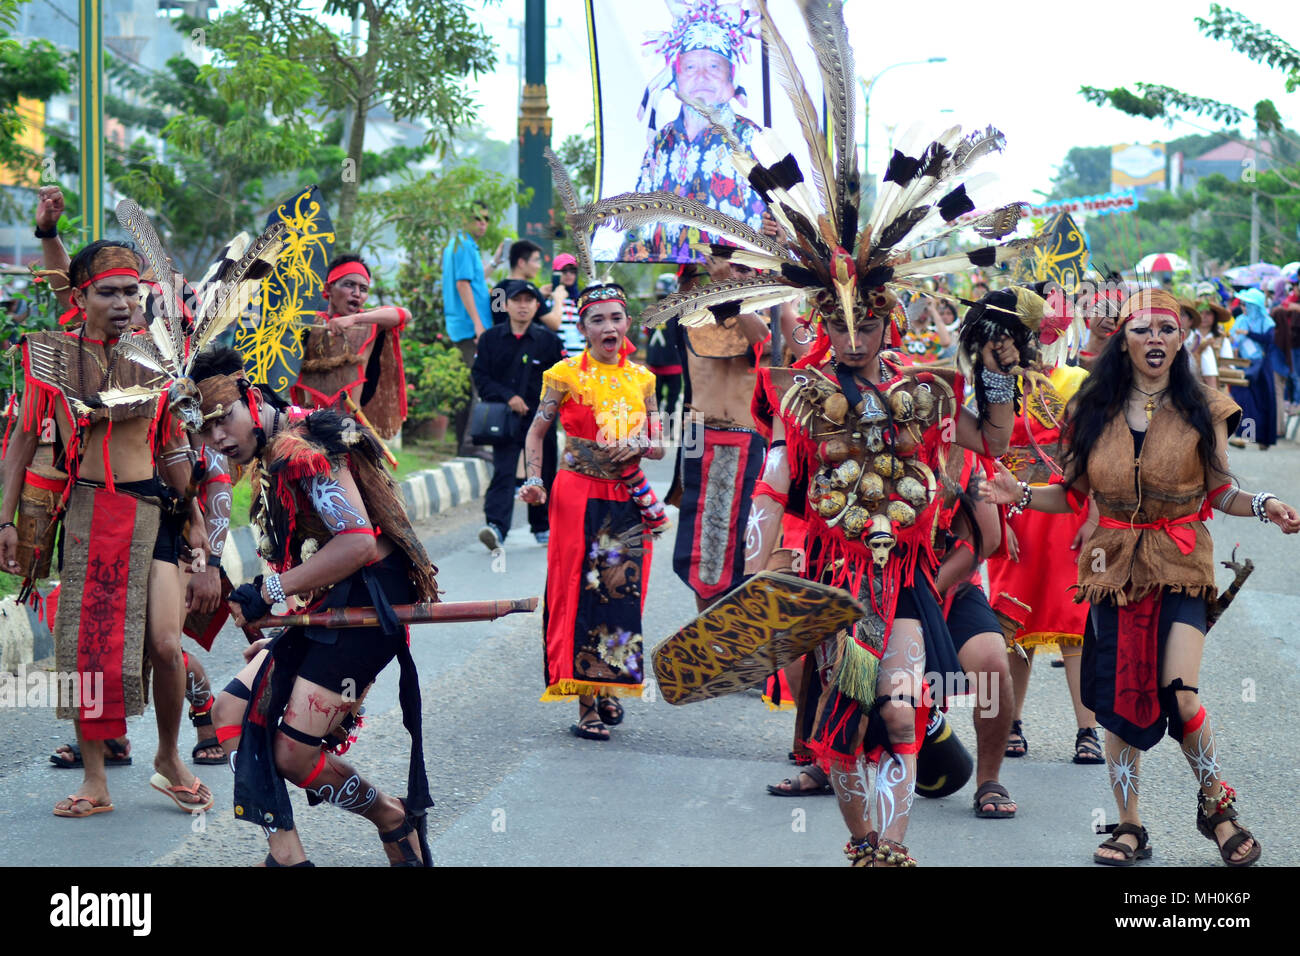 Festival culturel de Bornéo a lieu une fois par an dans le sud de Bornéo, Indonésie. Banque D'Images